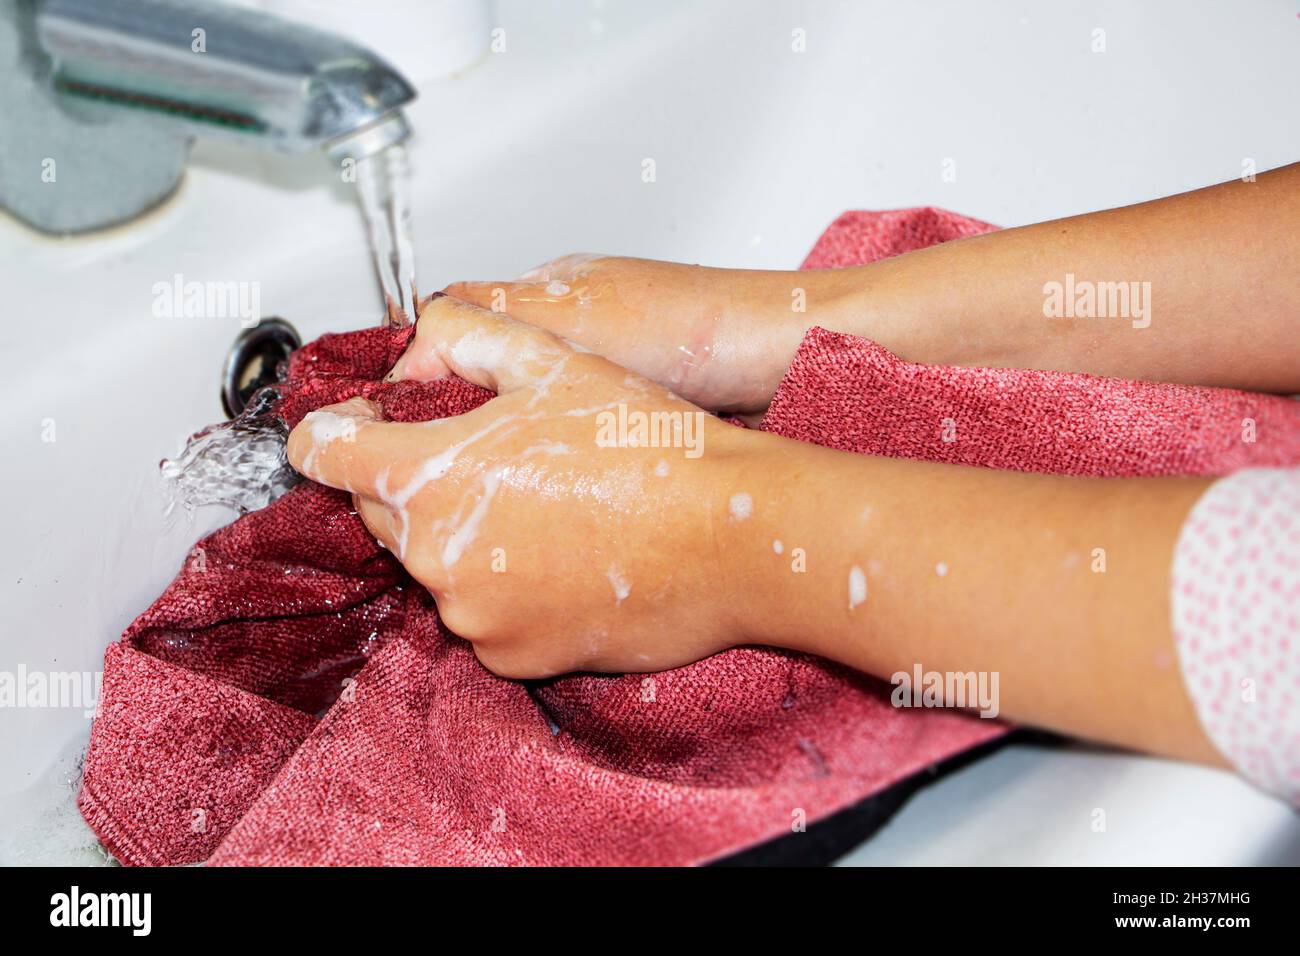 Händewaschen von farbigen Dingen. Frauenhände waschen und wringen farbige Dinge in Seifenwasser aus. Stockfoto